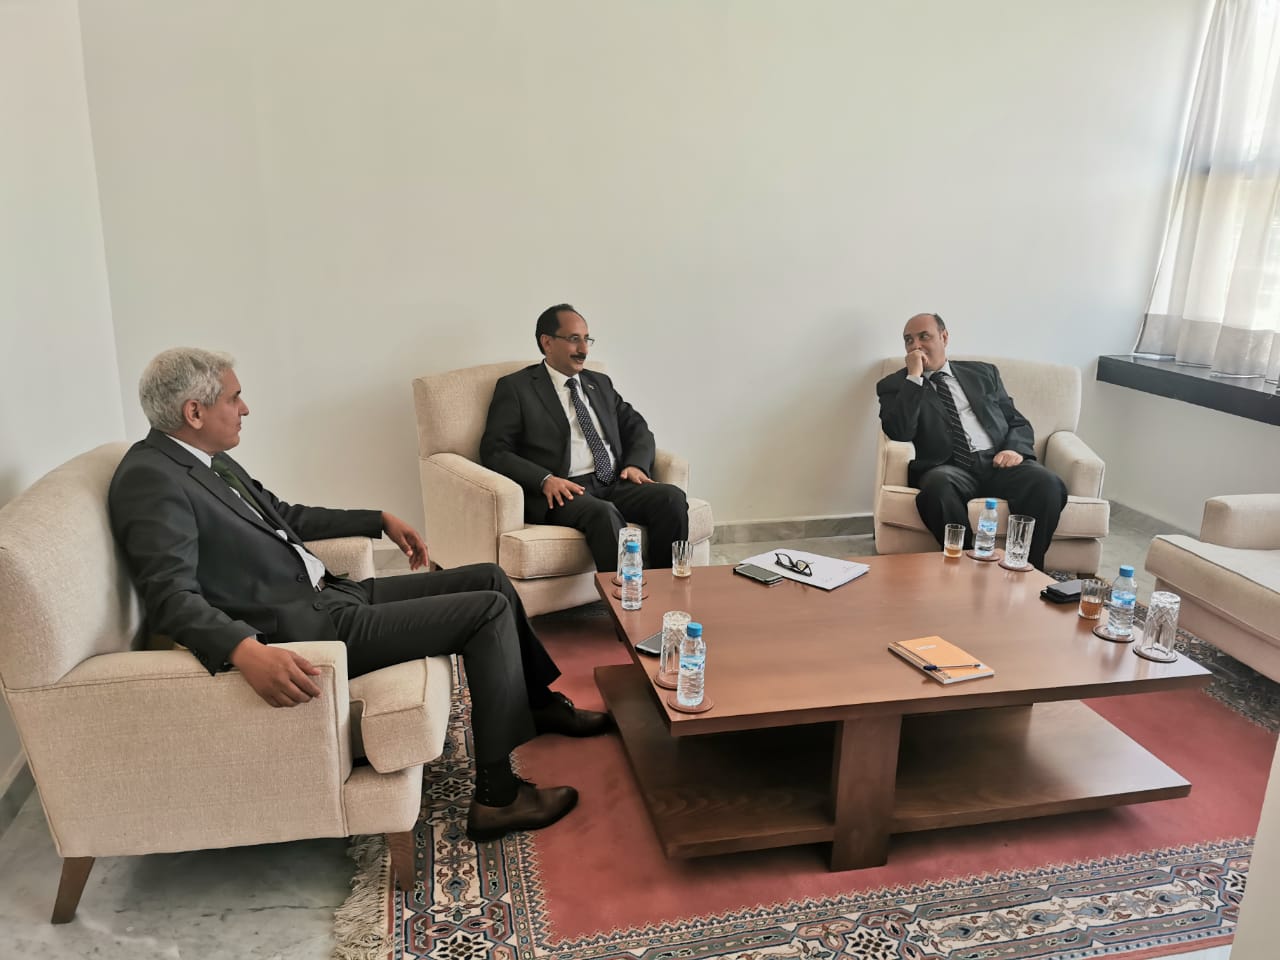 سفير بلادنا في الرباط يبحث مع مسؤول مغربي سبل تعزيز وتطوير العلاقات الثنائية بين البلدين 